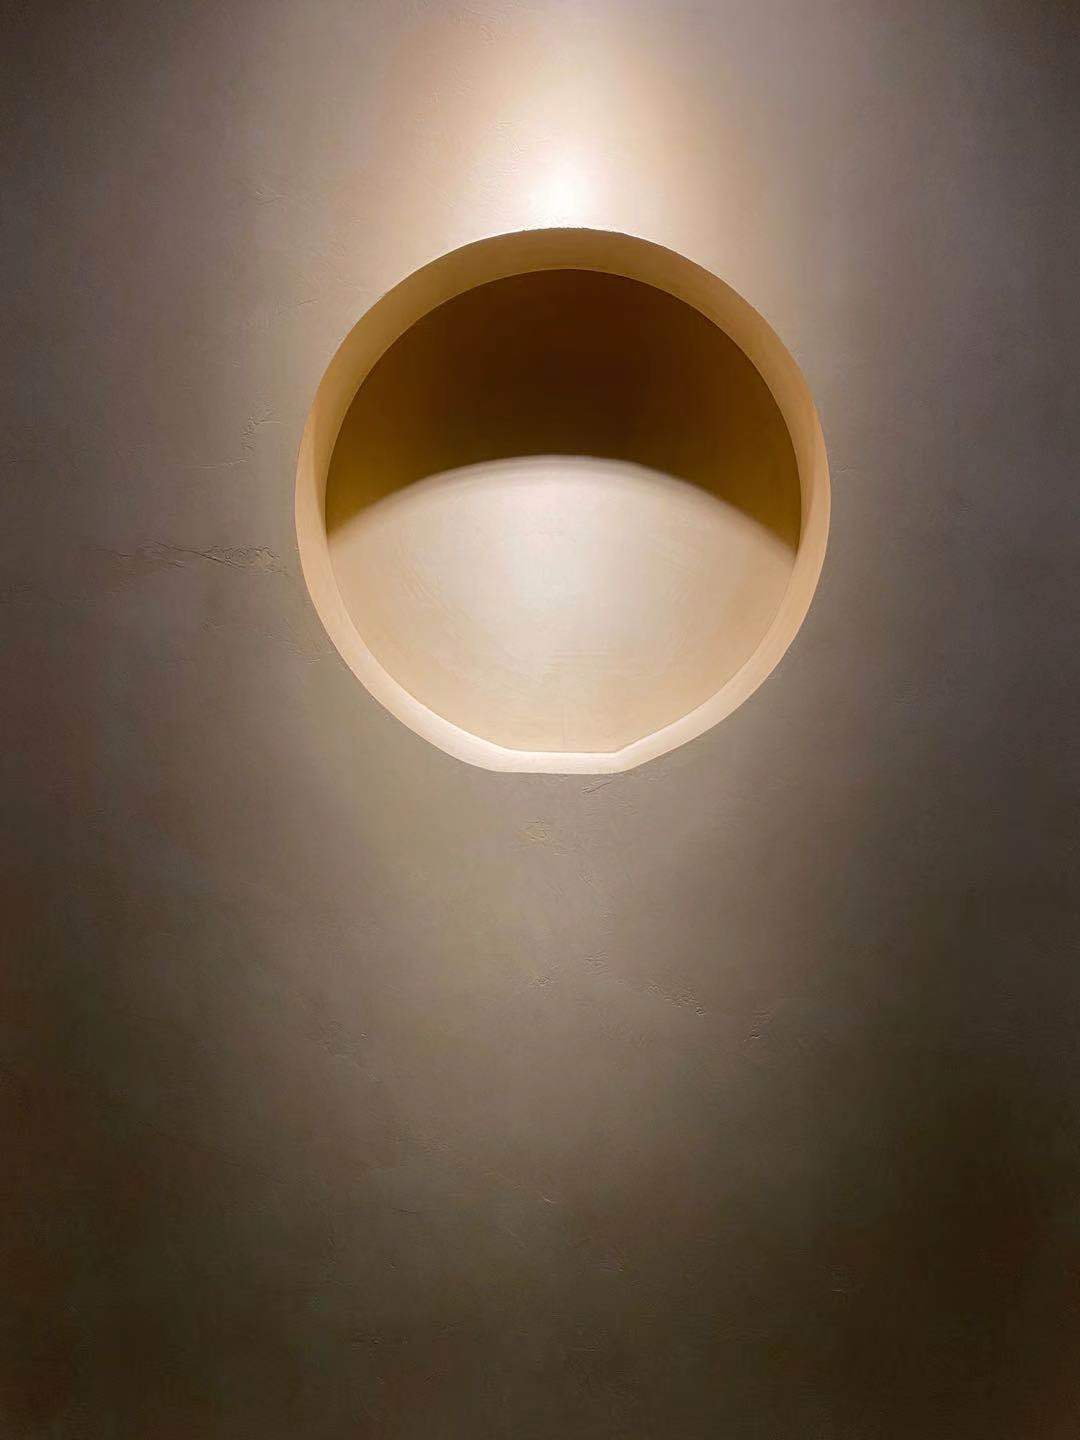 एक मिनिमलिस्टिक शैली के आवास में दीवार पर माइक्रोसीमेंट, जहाँ एक प्रकाश रूप से अपनी प्रकाश को बढ़ावा देता है